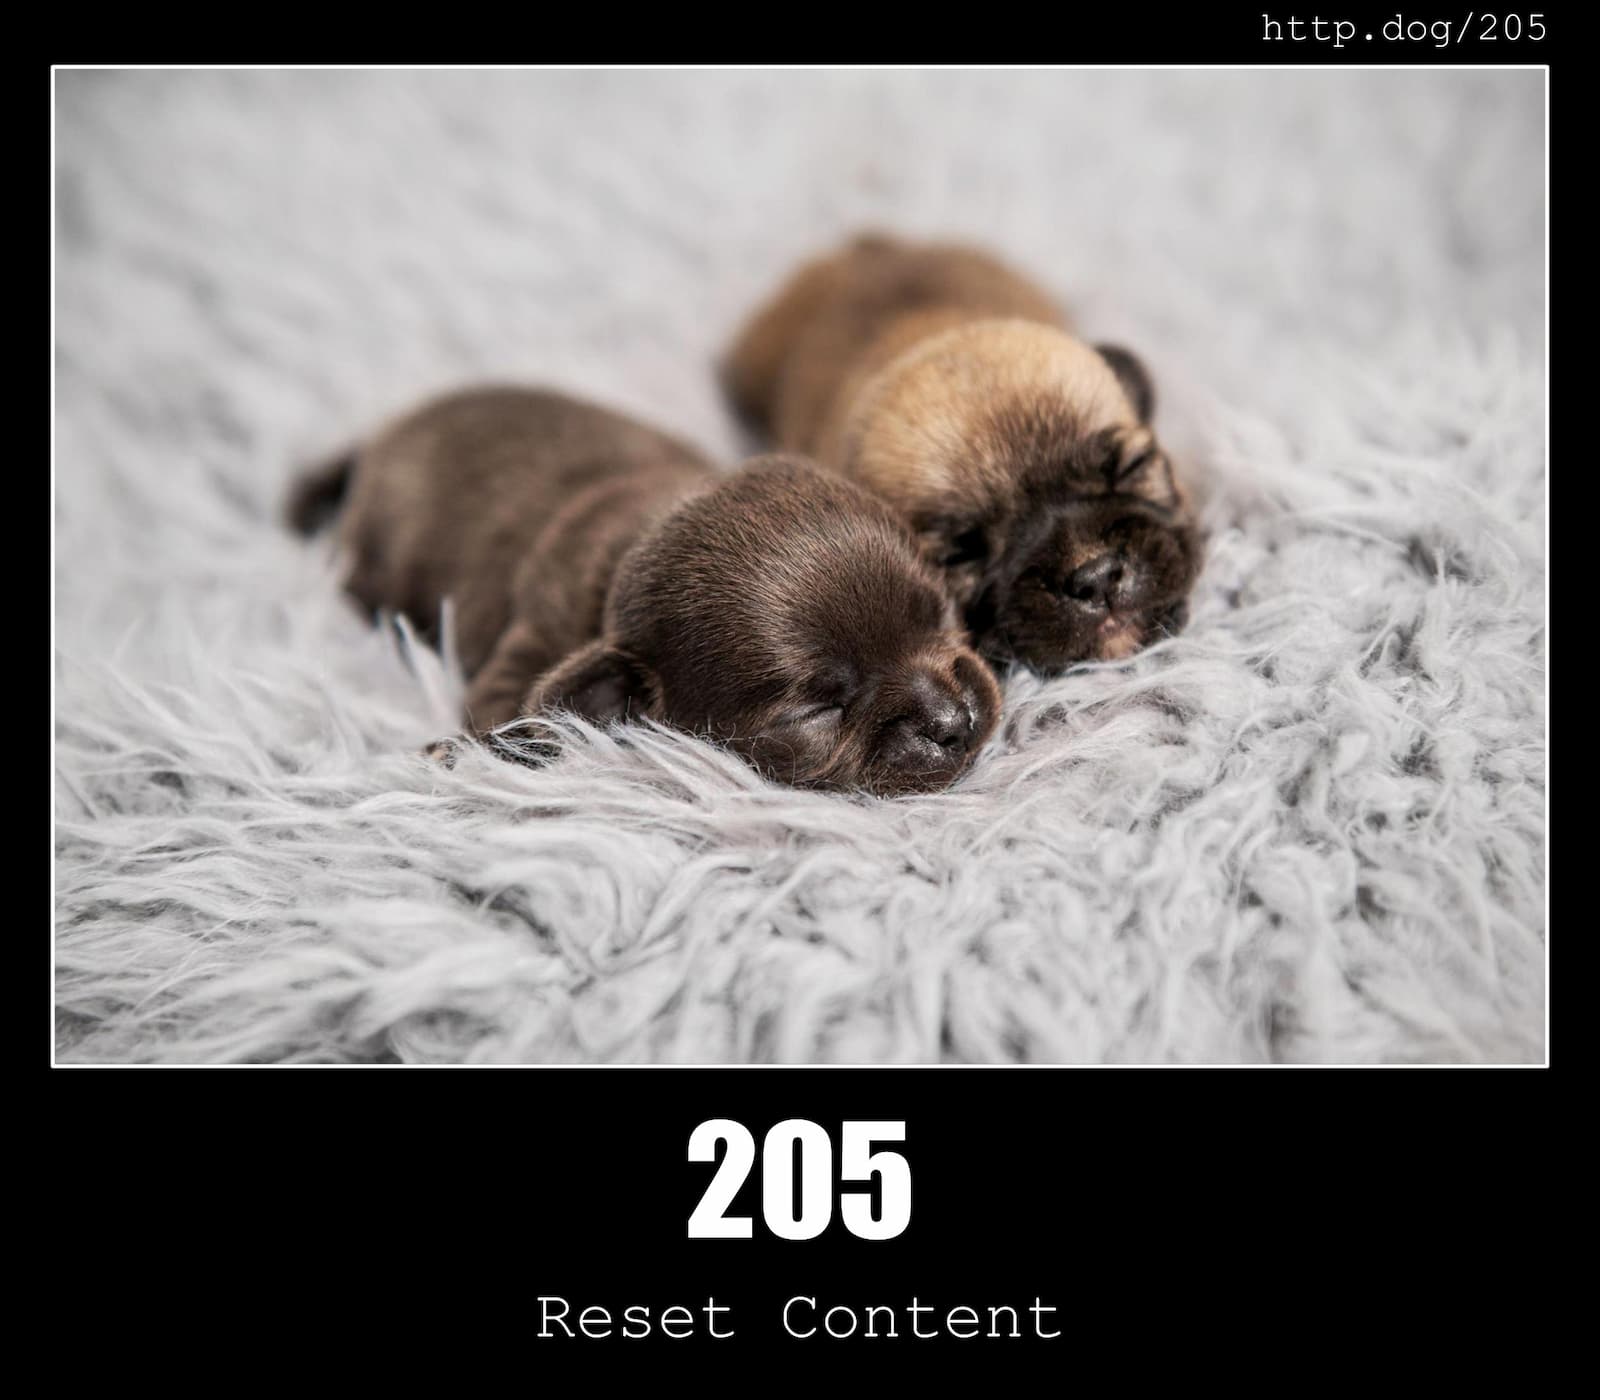 HTTP Status Code 205 Reset Content